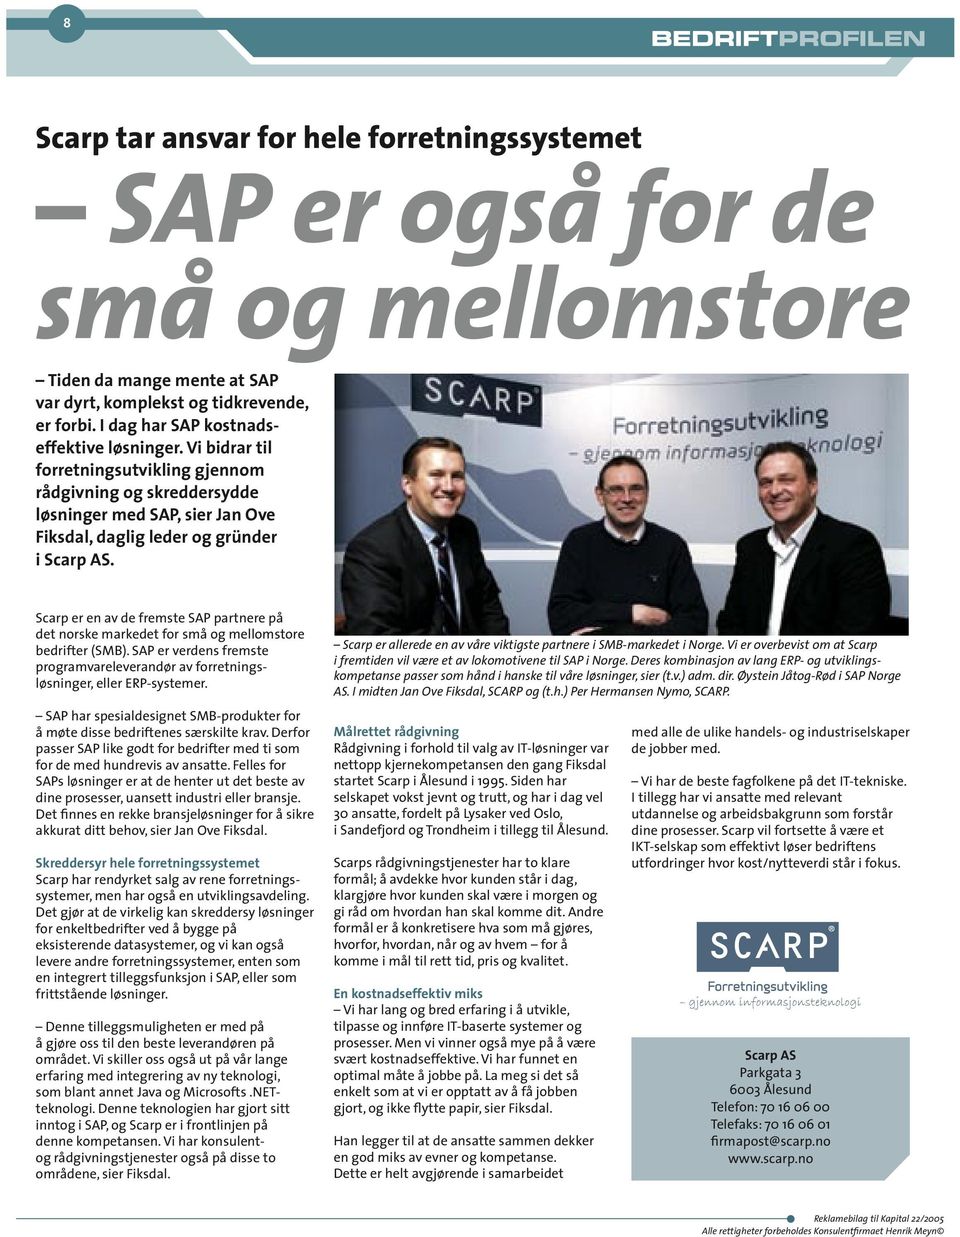 Scarp er en av de fremste SAP partnere på det norske markedet for små og mellomstore bedrifter (SMB). SAP er verdens fremste programvareleverandør av forretningsløsninger, eller ERP-systemer.